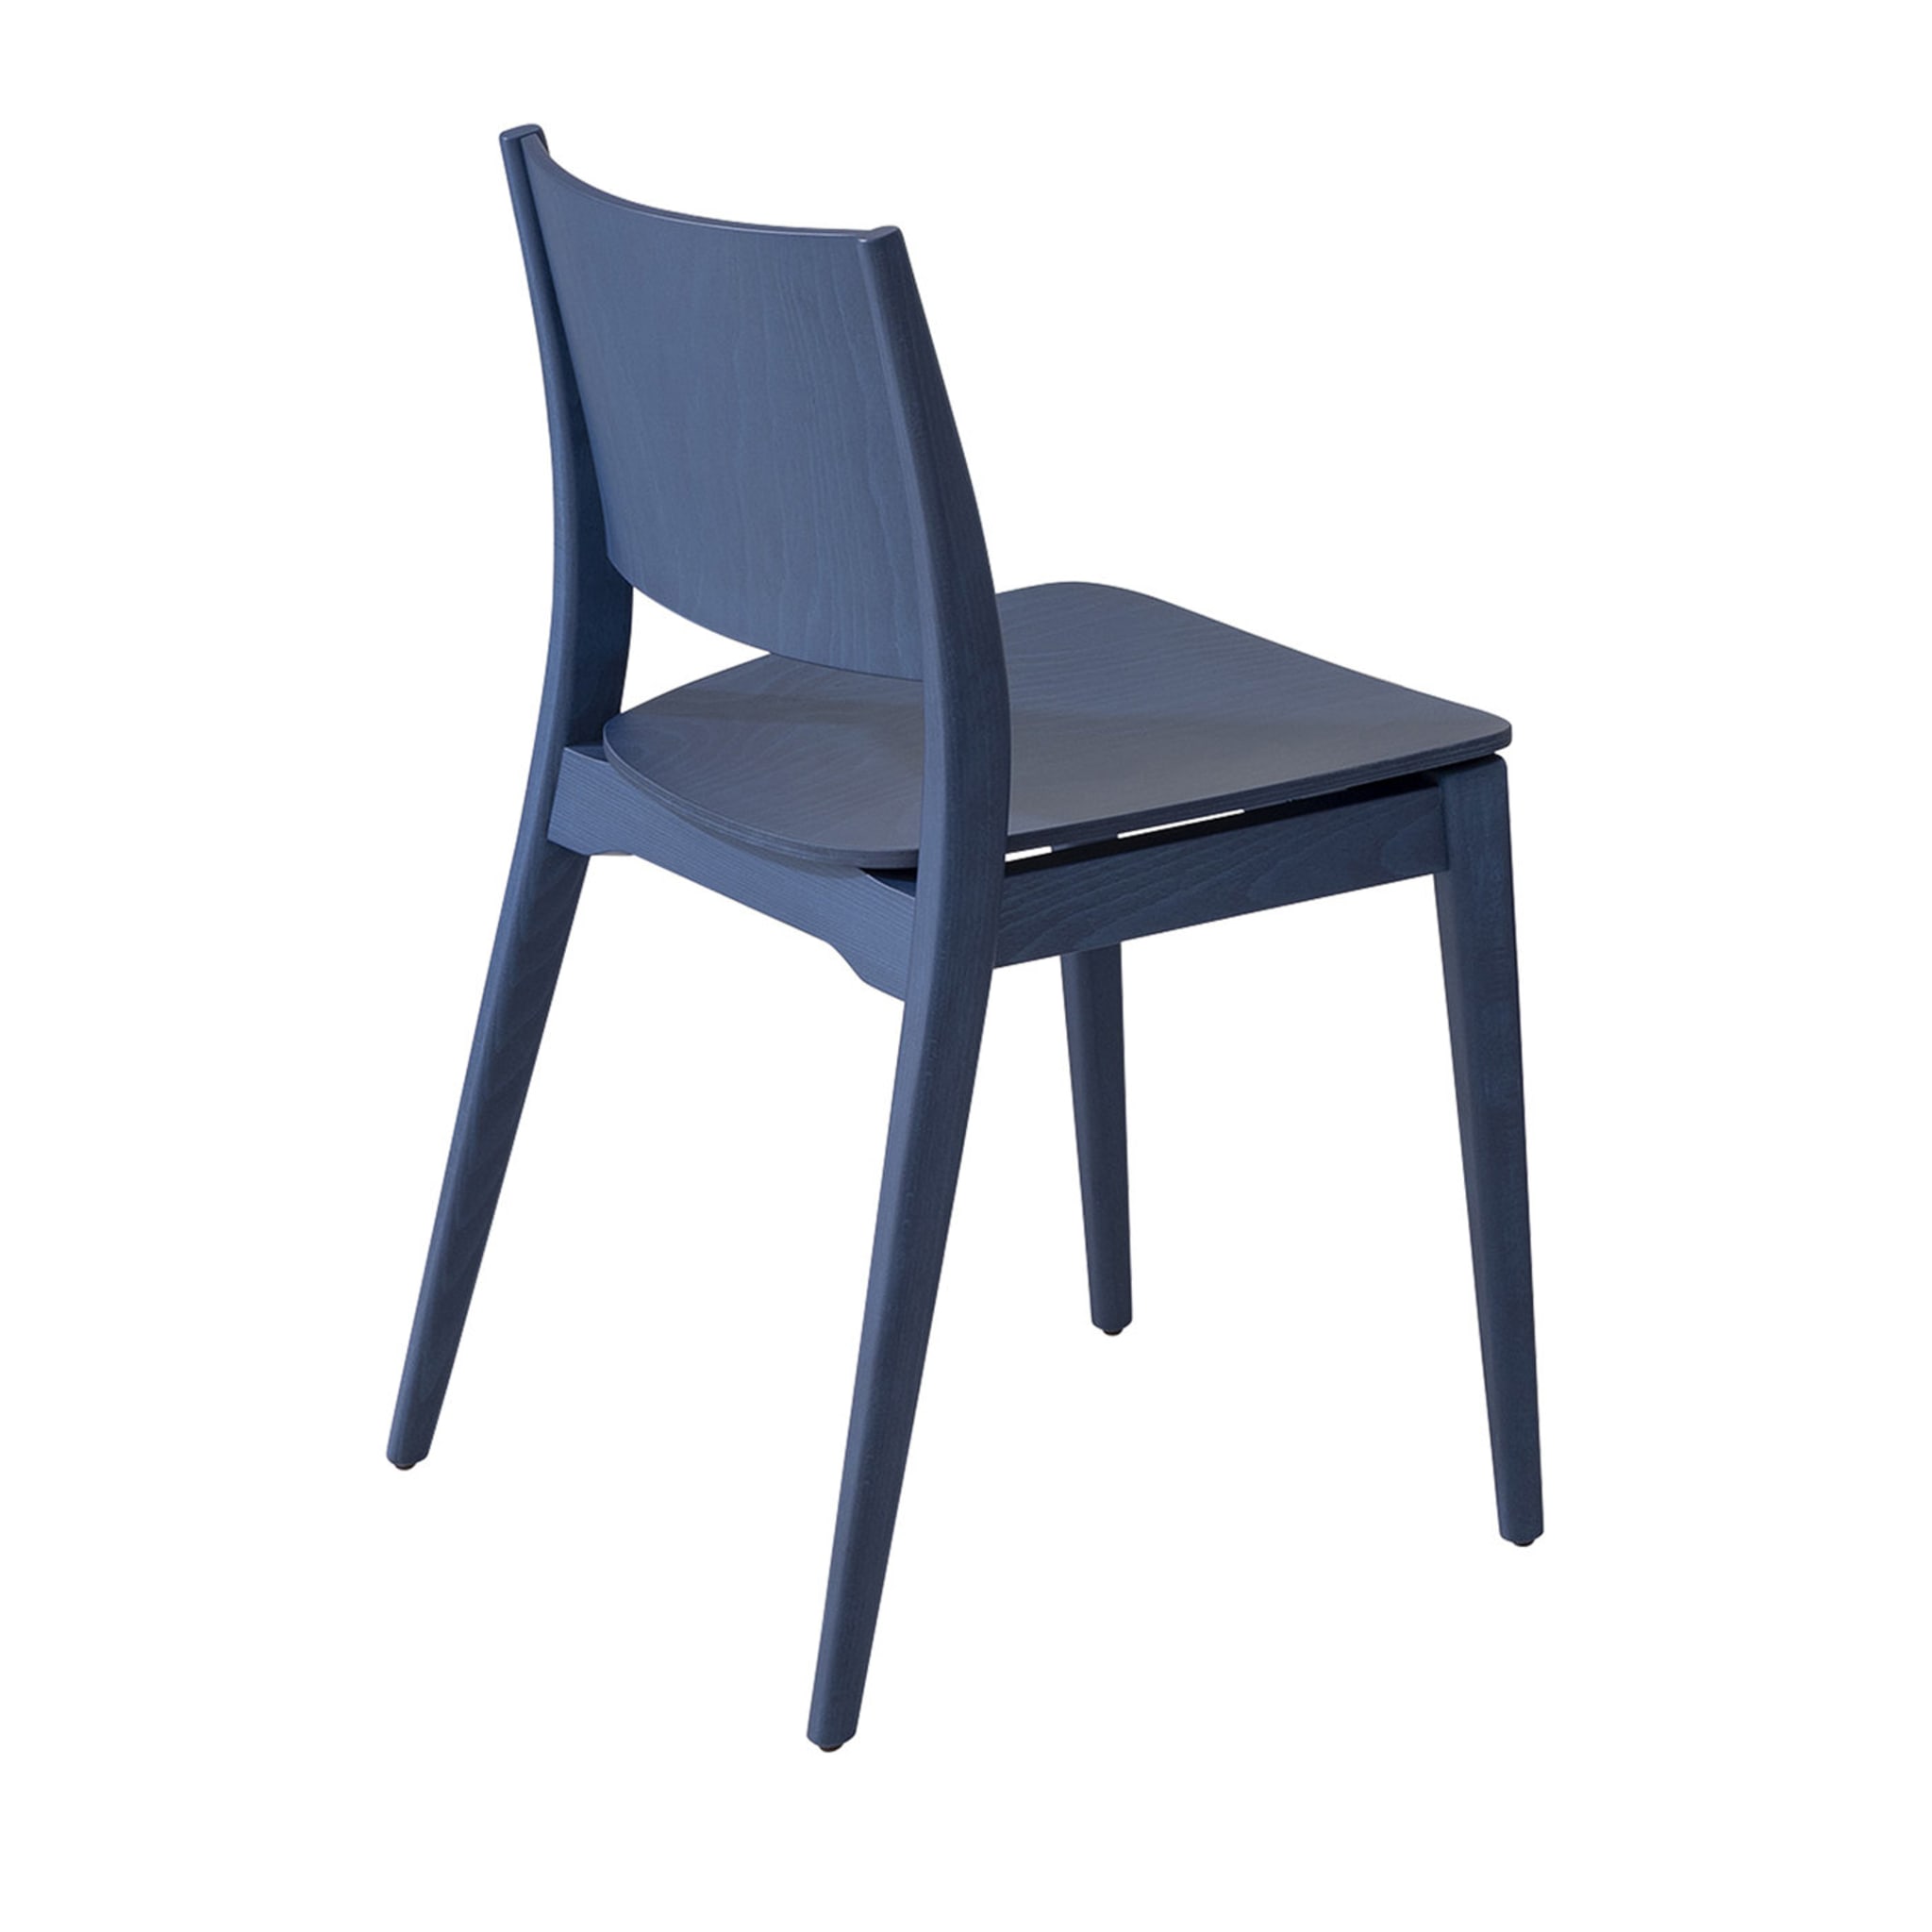 Blazer 632 Blue Chair by Emilio Nanni - Main view